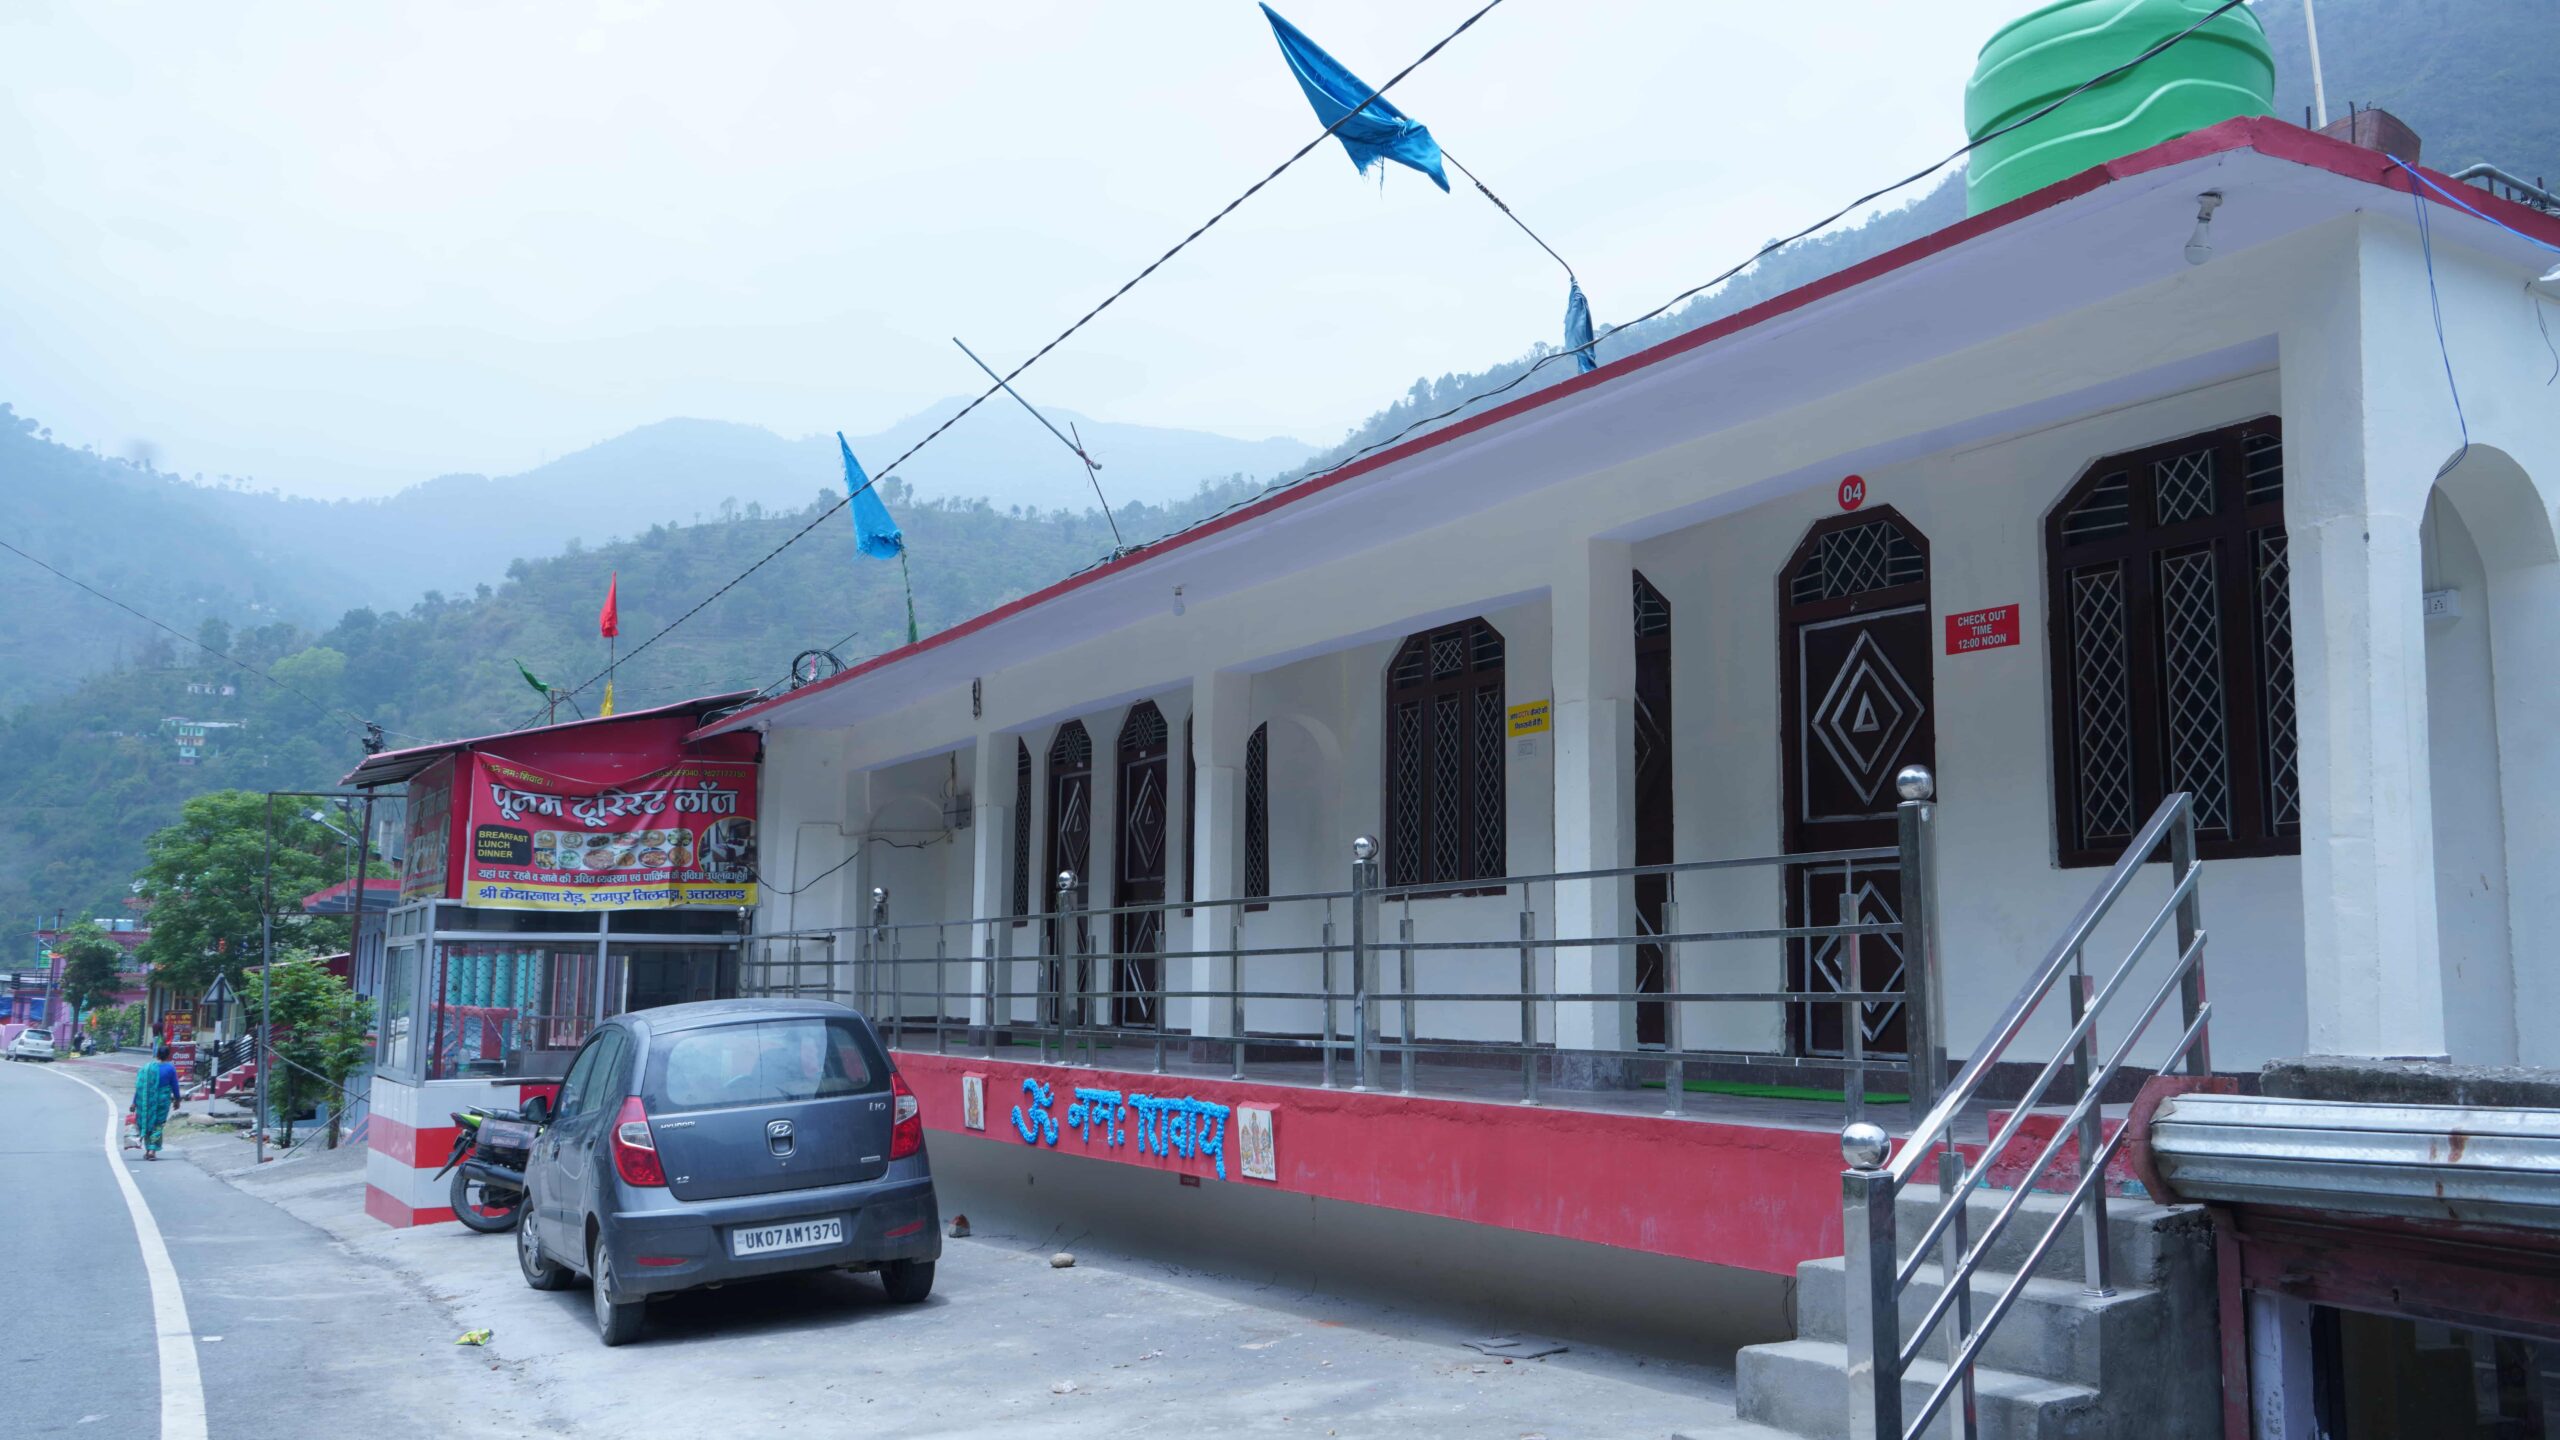 Poonam Tourist Lodge, Tilwada